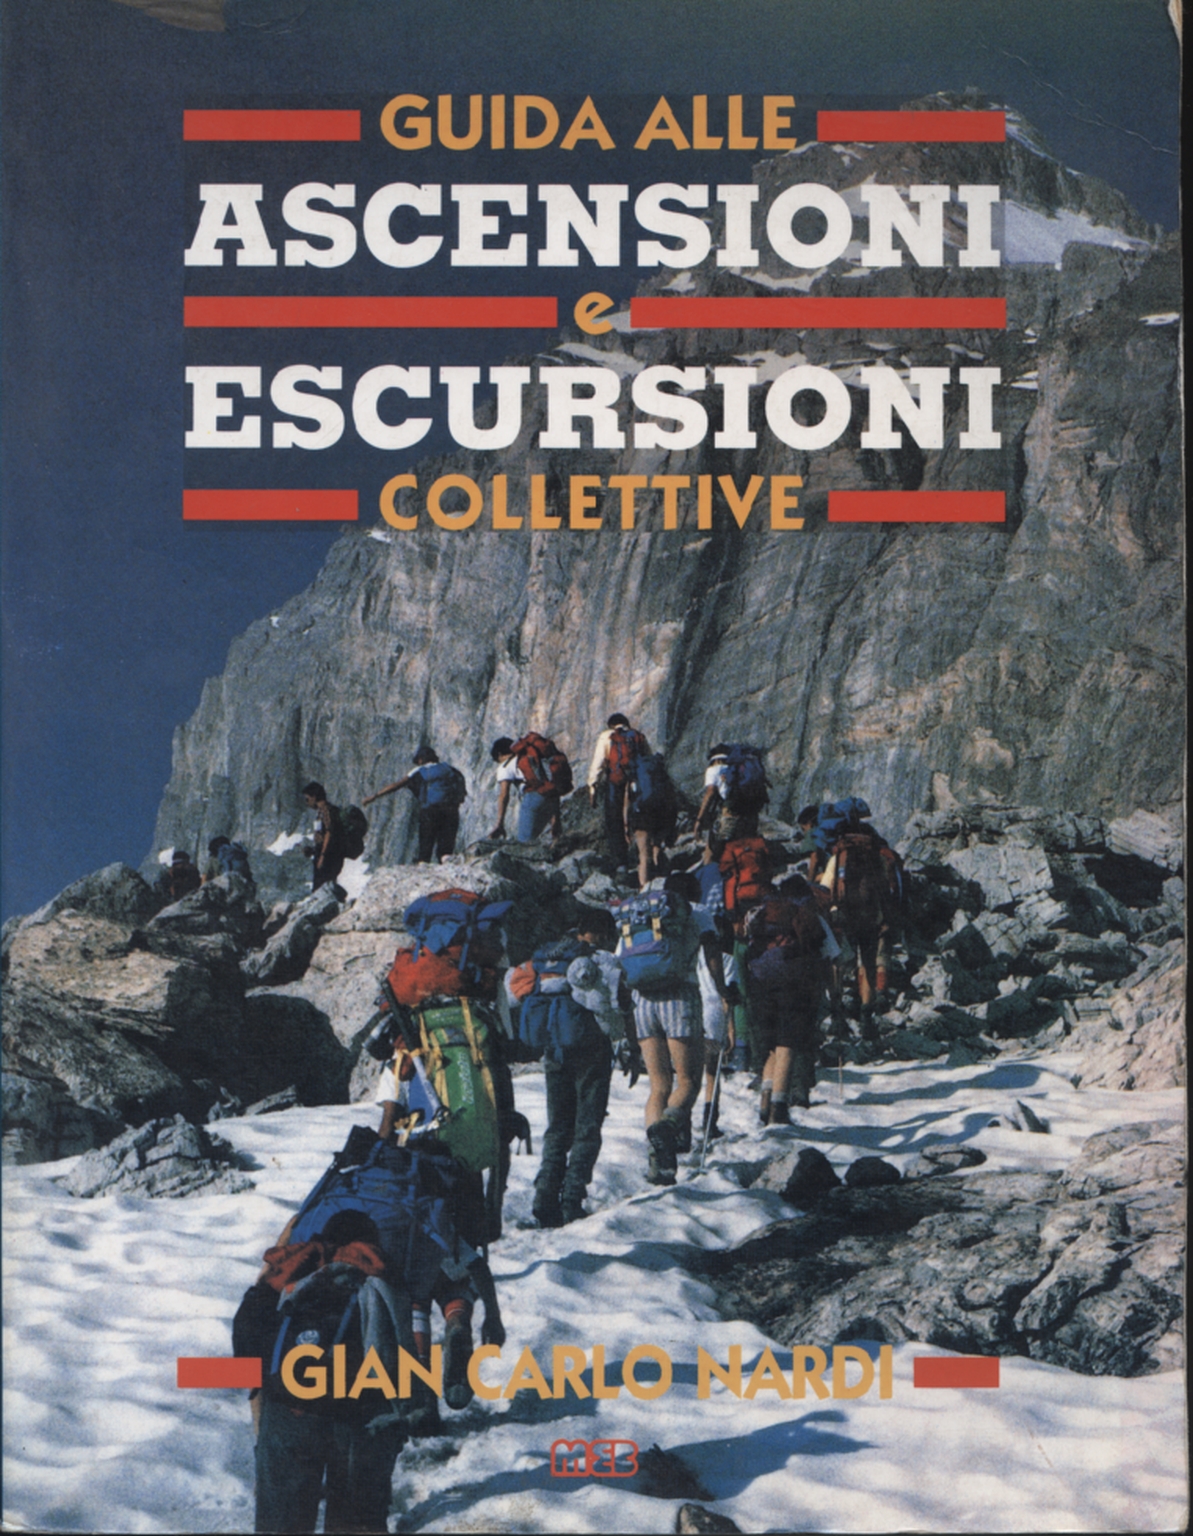 Guía para la escalada y el senderismo colectiva, Gian Carlo Nardi